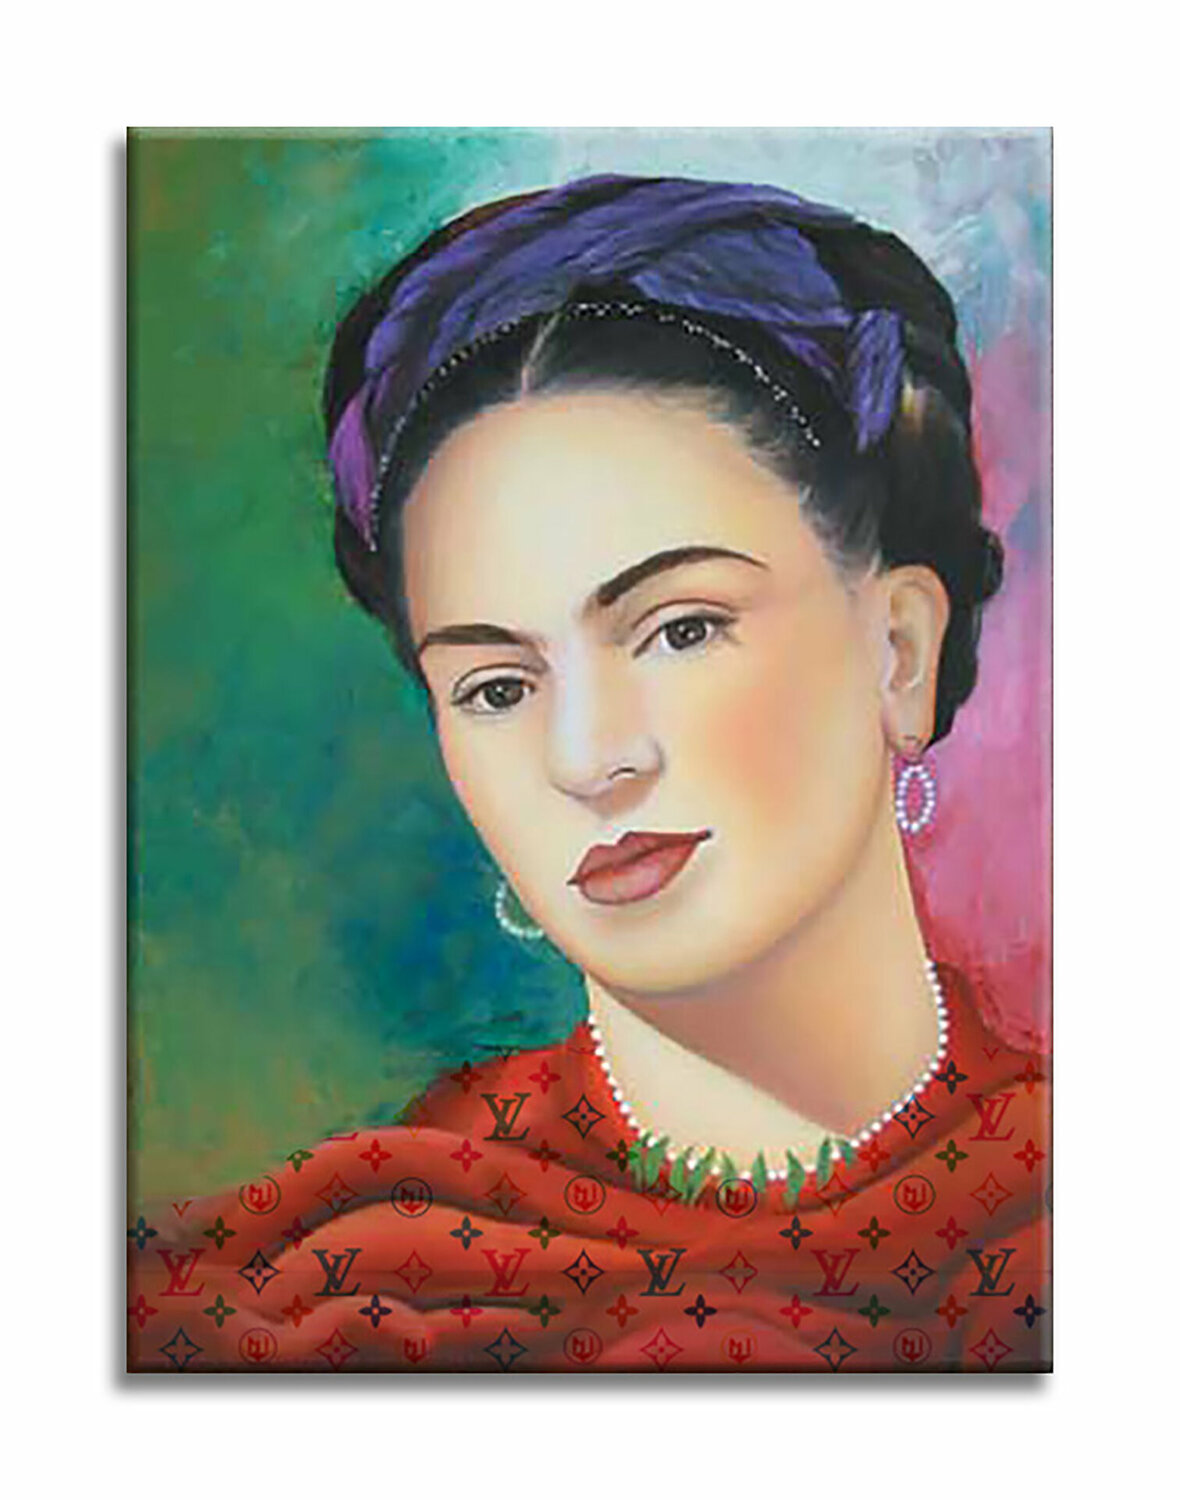 Frida Kahlo zu kaufen: Erwerben Sie Kunstwerke inspirierten von Frida